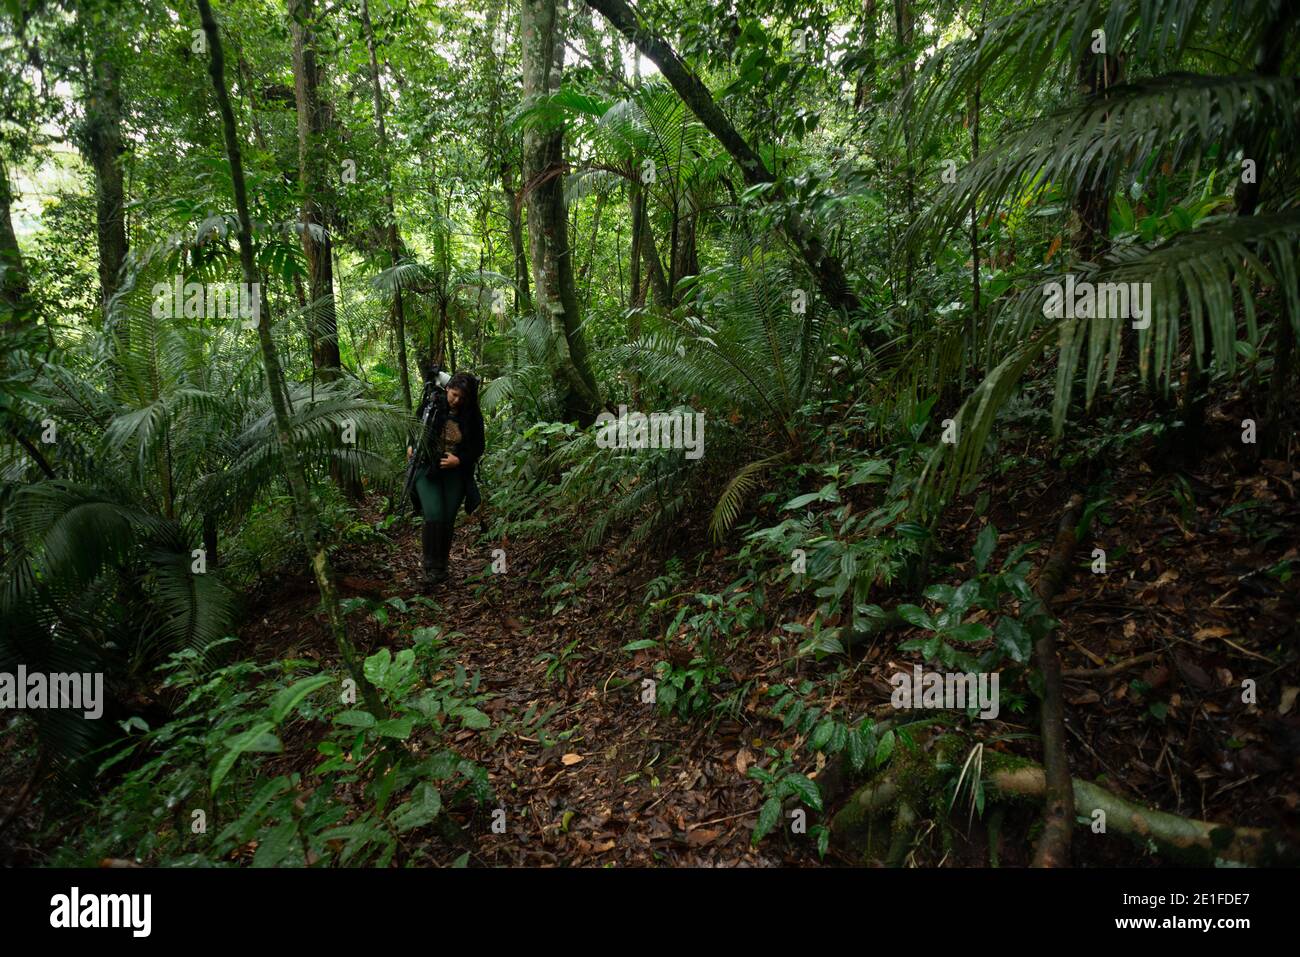 Une femme transportant du matériel photo marchant sur un sentier dans le Forêt tropicale de l'Atlantique du Sud-est du Brésil Banque D'Images